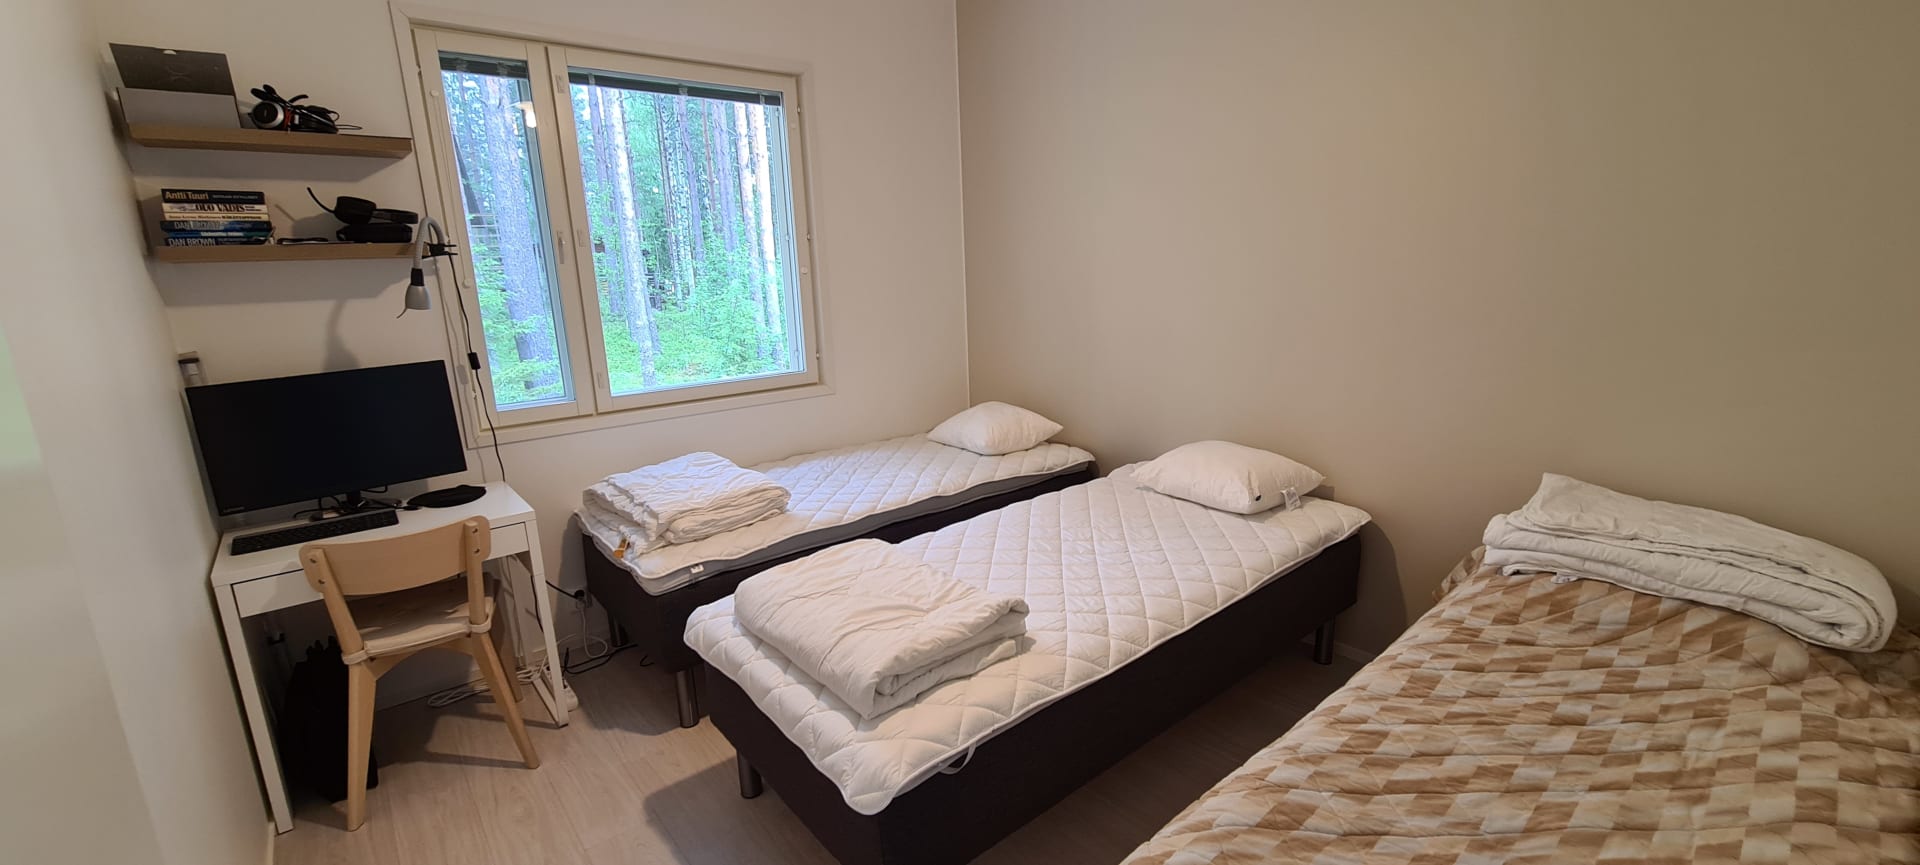 Toinen makuuhuone jossa kaksi 80 x 200 cm laadukasta runkopatjasänkyä ja kolmas 190 x 80 cm sänky